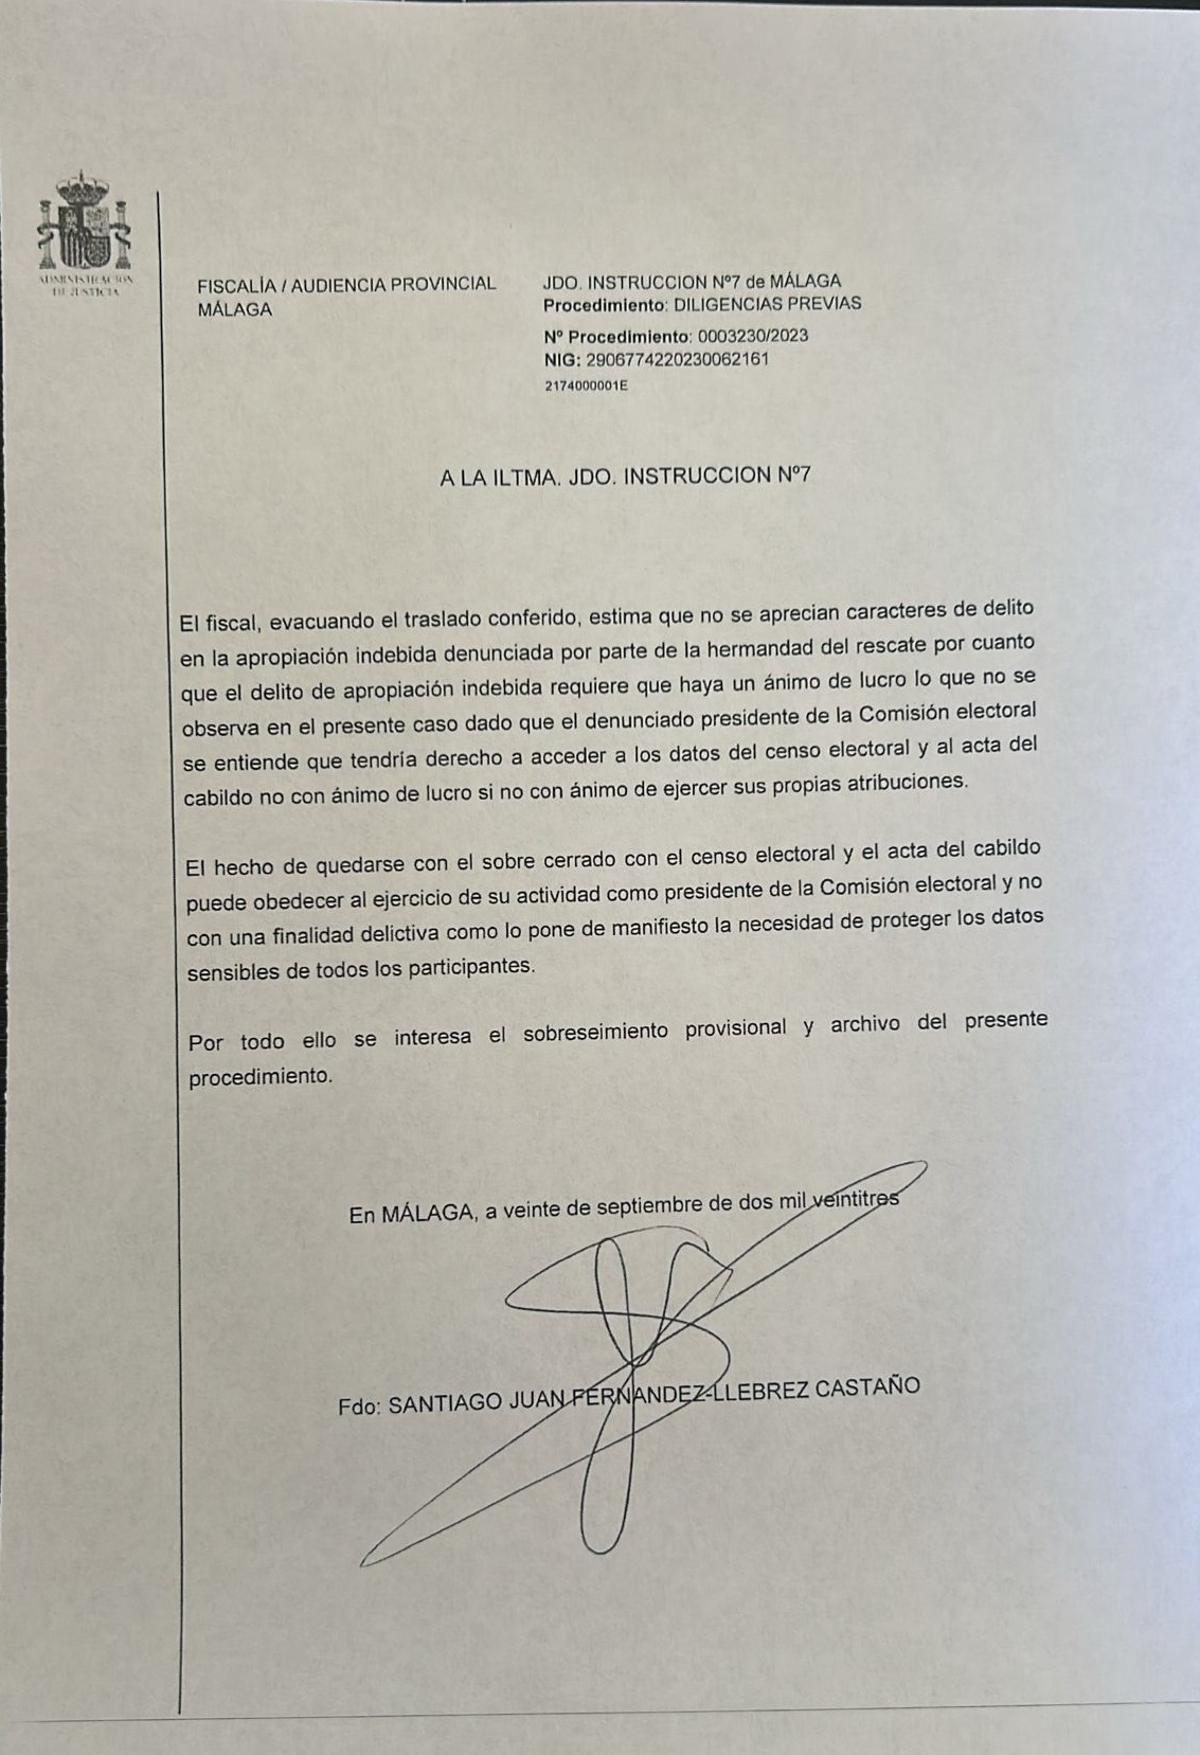 Informe del Ministerio Fiscal ante la denuncia de hermanos del Rescate contra Clemente Solo de Zaldívar.